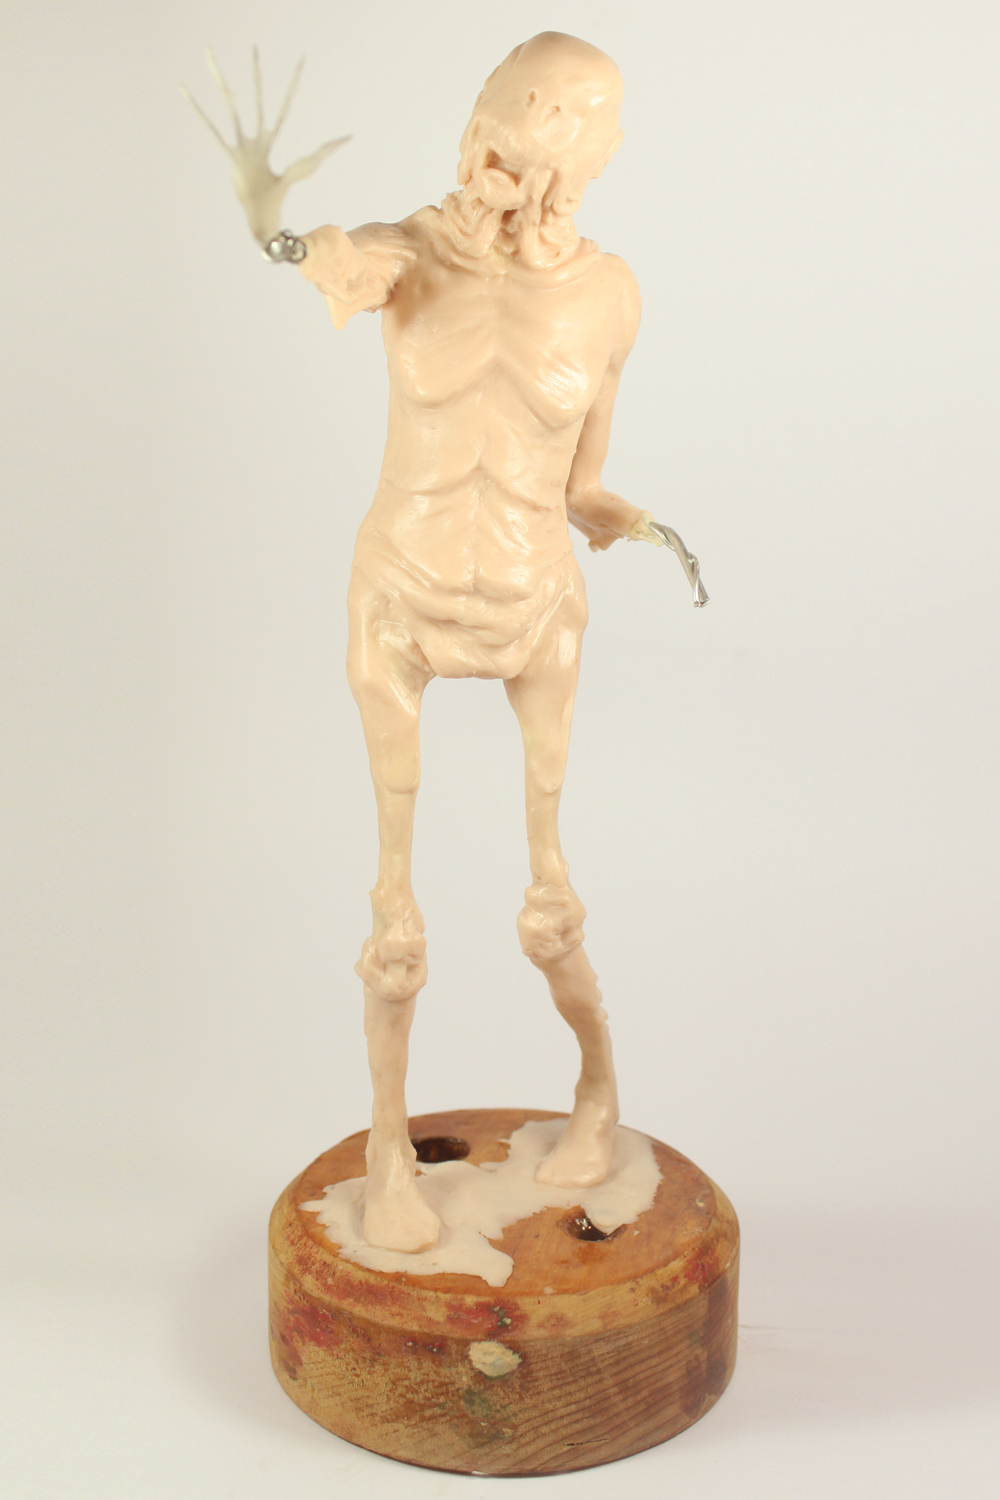 Pale Man sculpture by Julie Sharpe